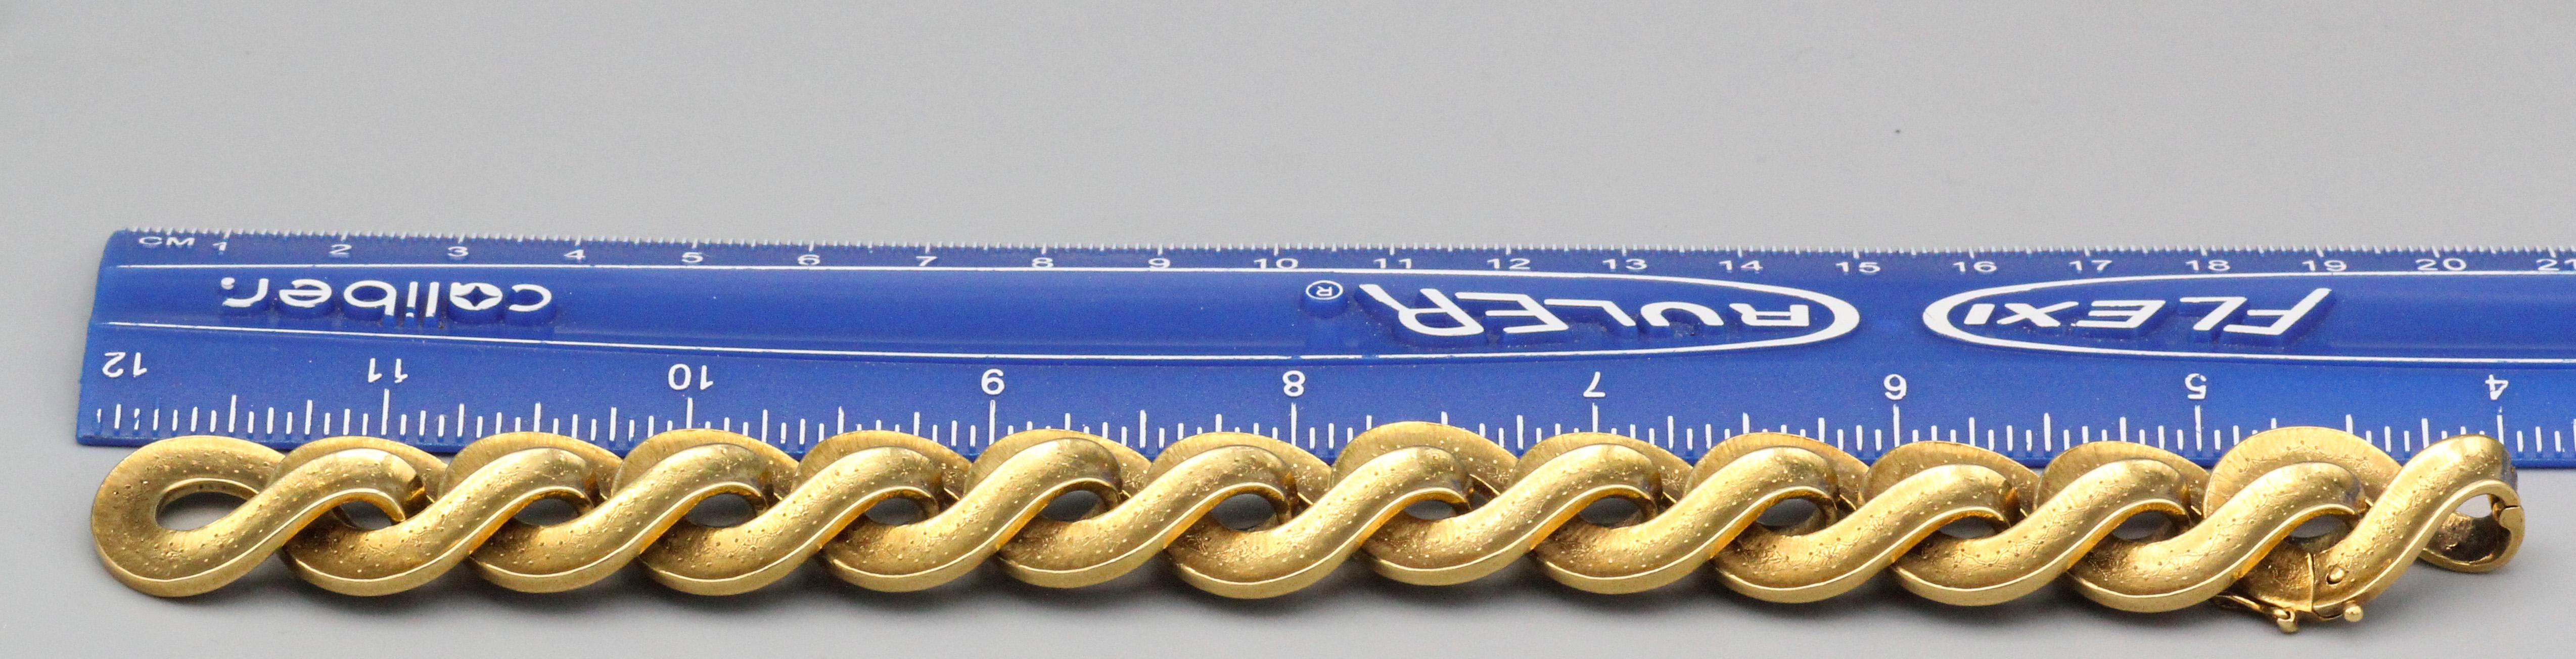 Buccellati Vintage 18 Karat Gold Link Bracelet For Sale 1